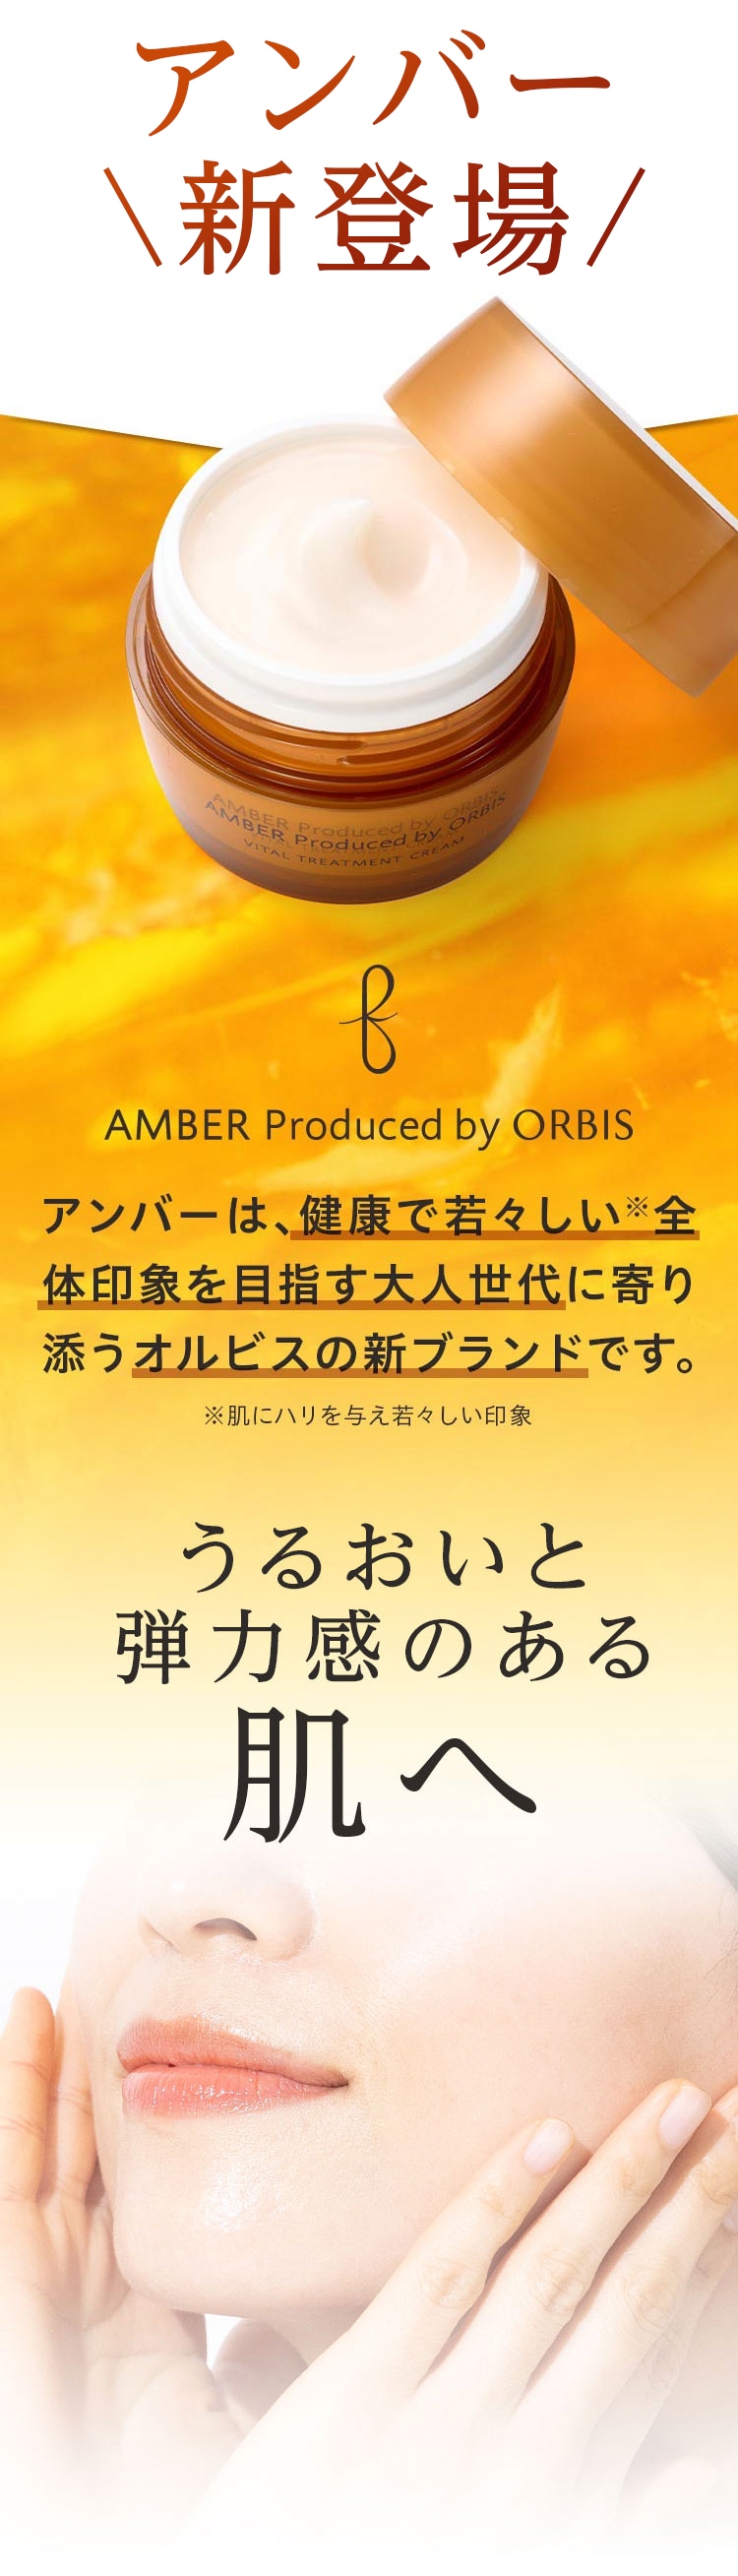 ORBIS AMBER3